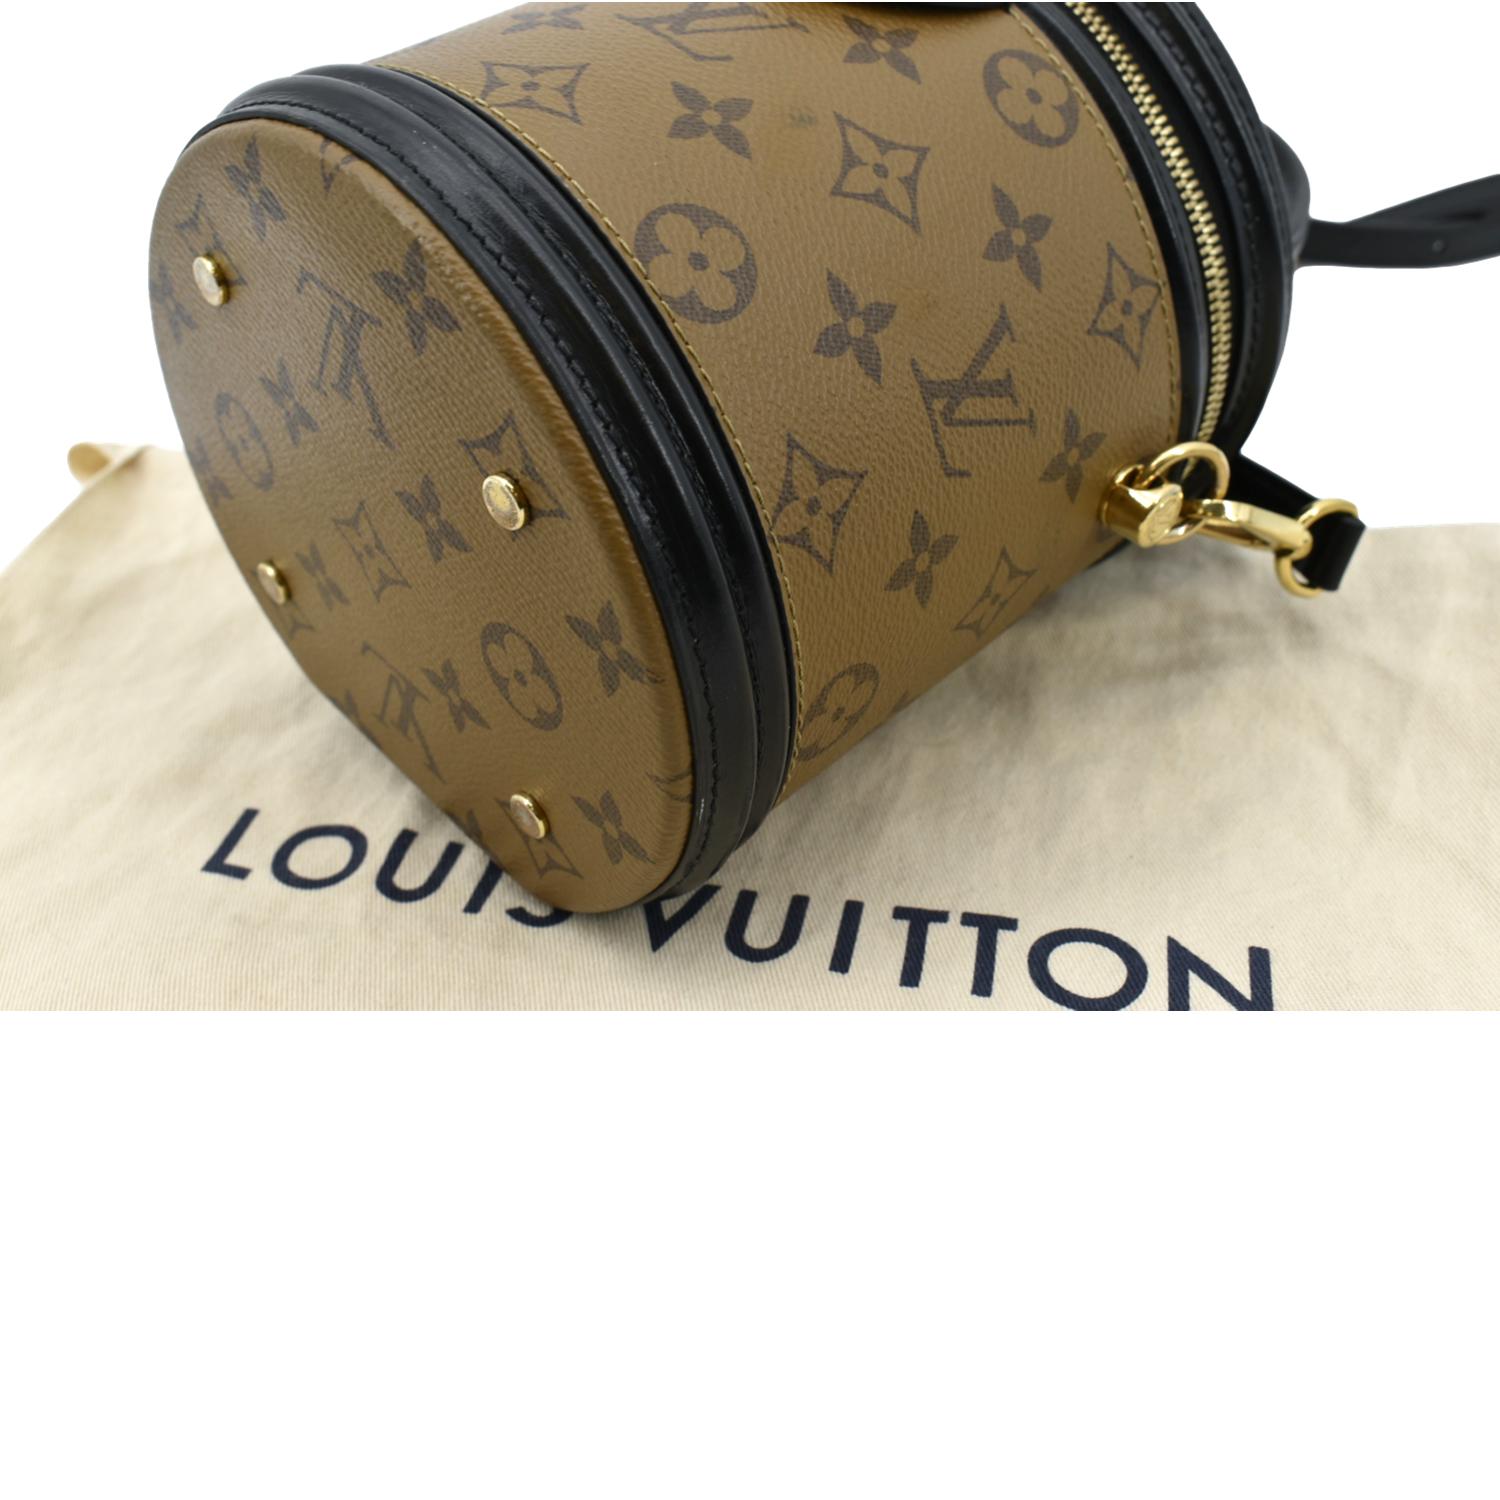 Louis Vuitton Monogram Cannes Bag